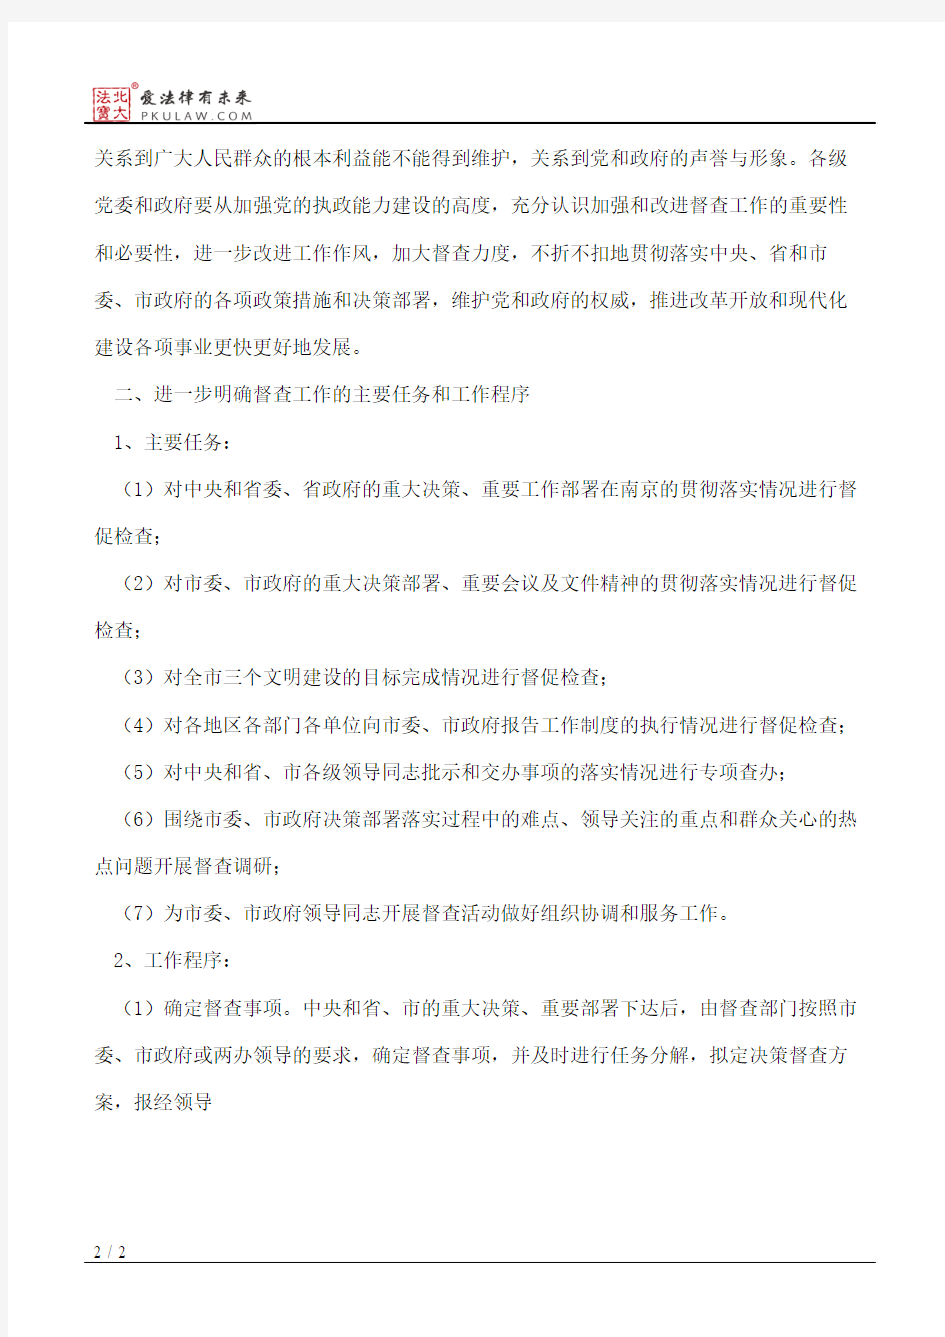 中共南京市委办公厅、南京市人民政府办公厅关于进一步加强和改进